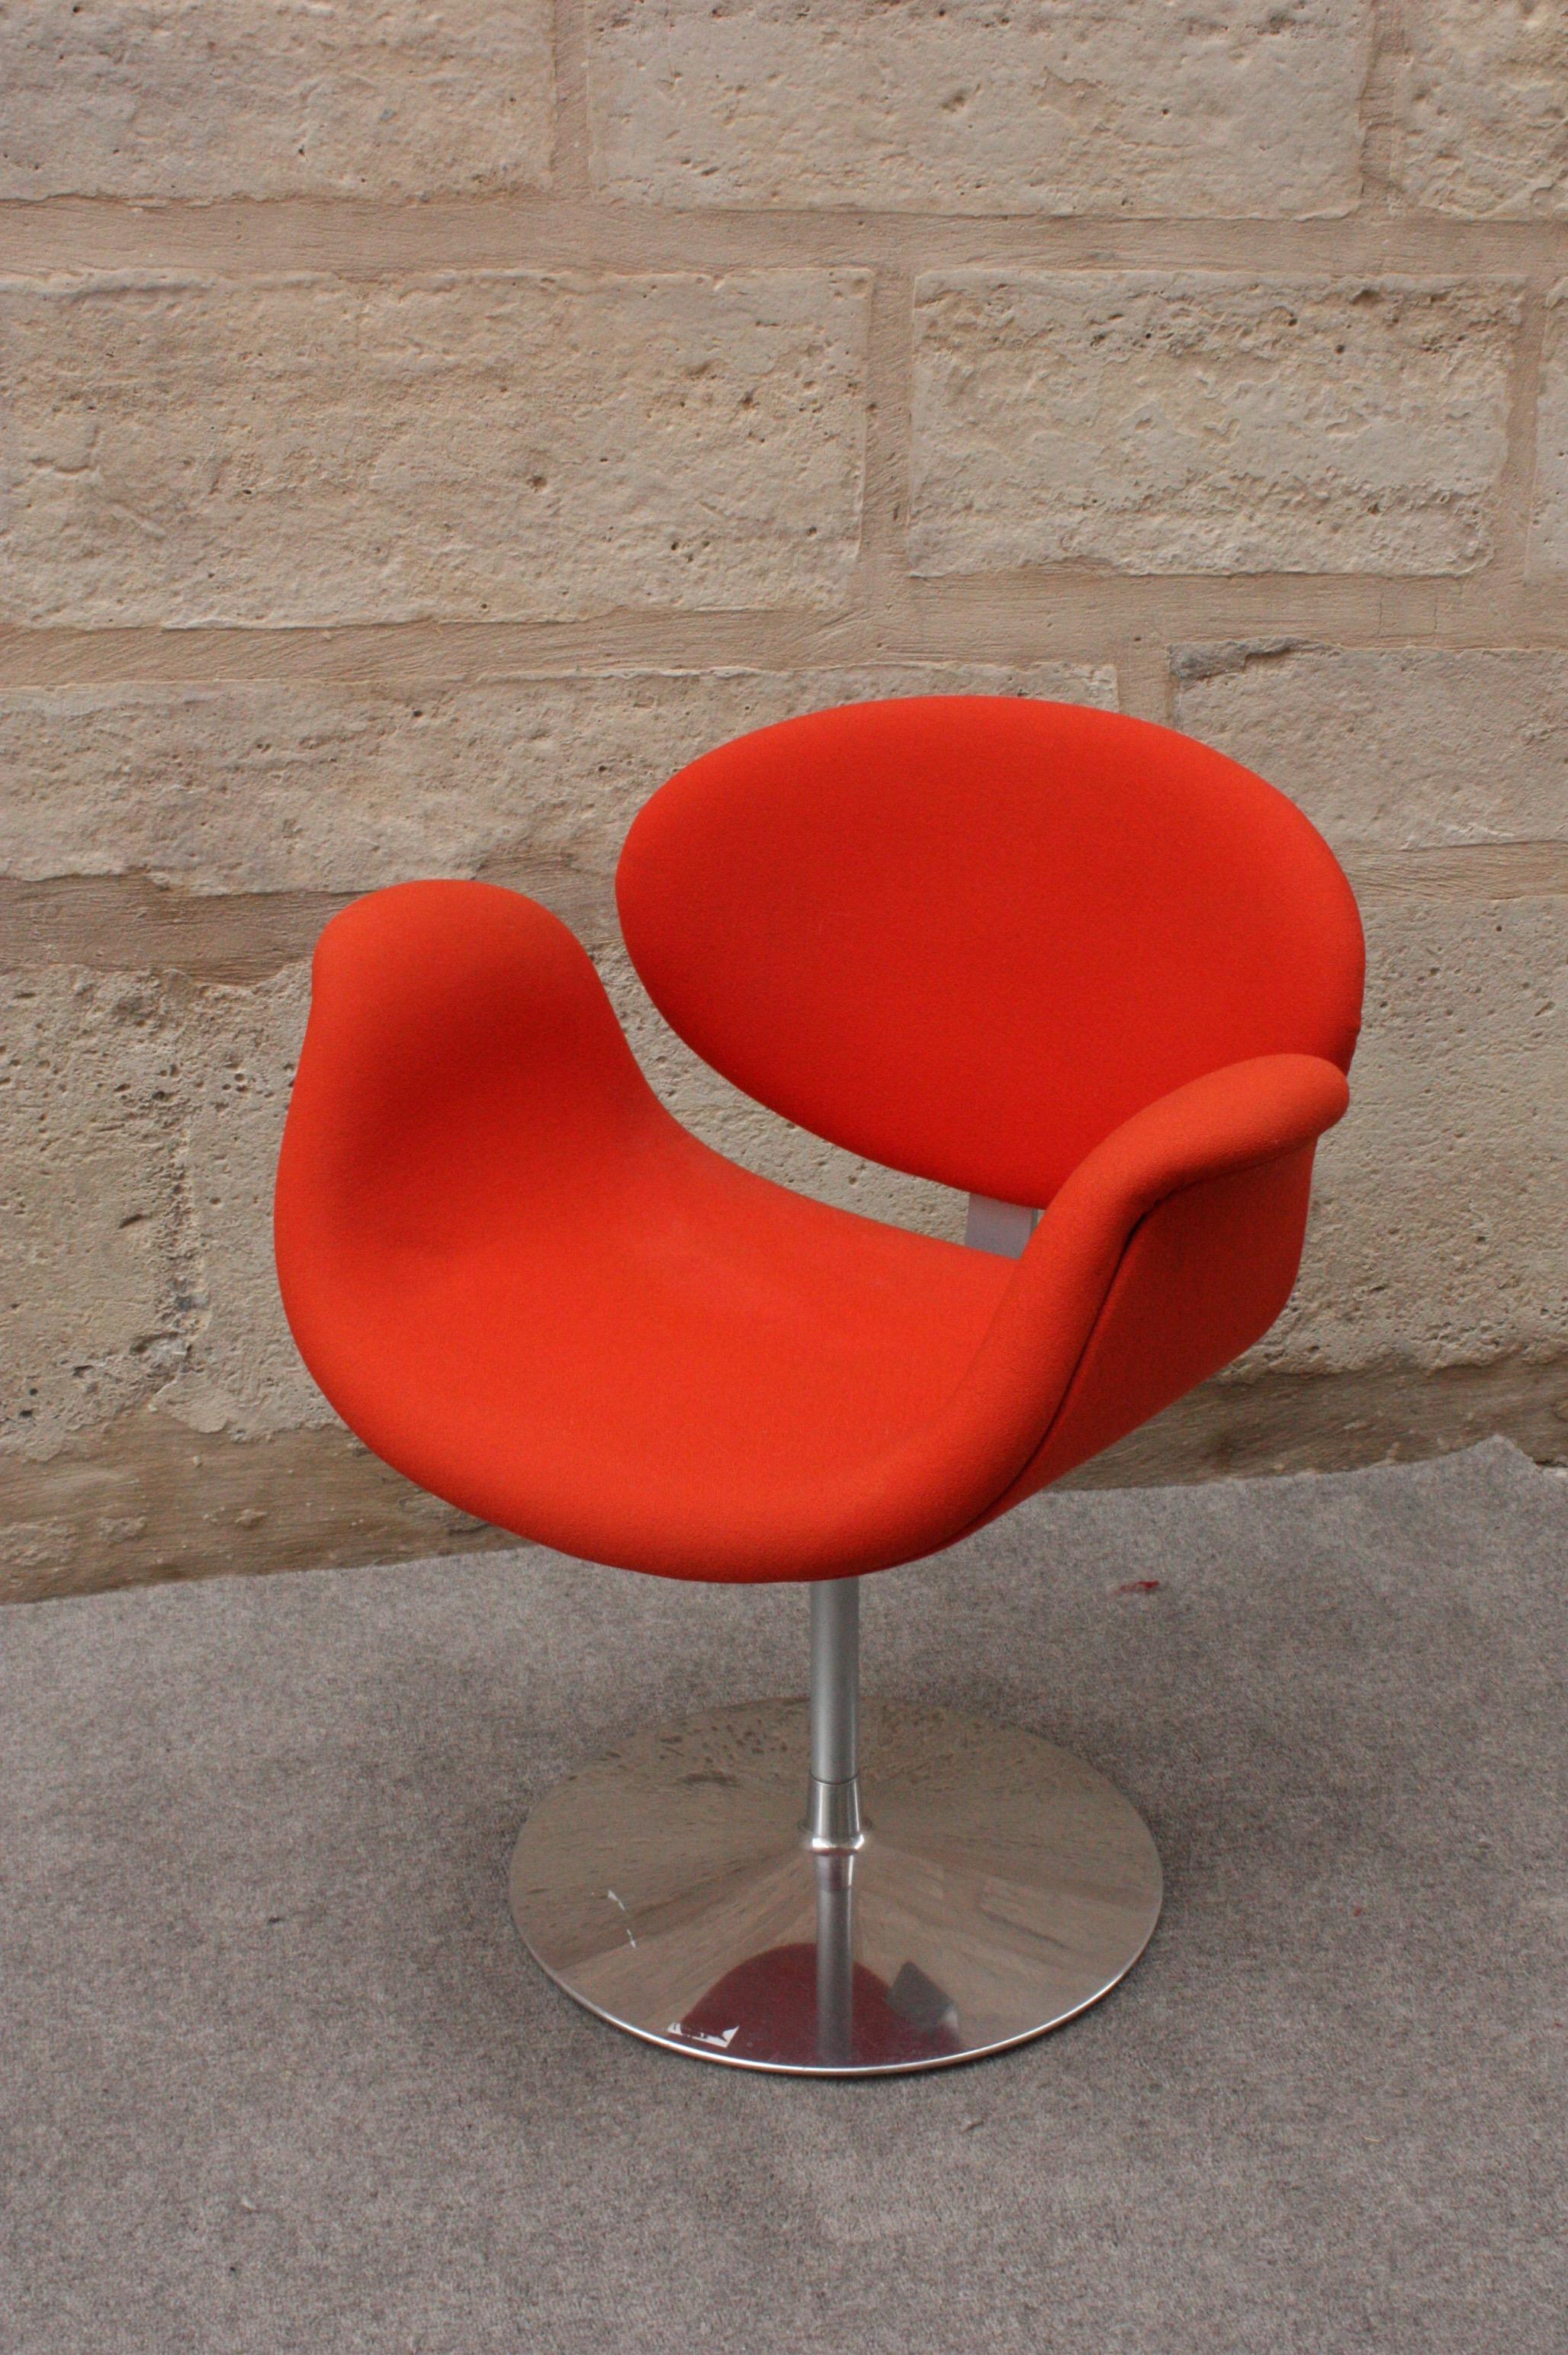 Pierre Paulin (1927–2009)
Swiveling armchair 
Model 